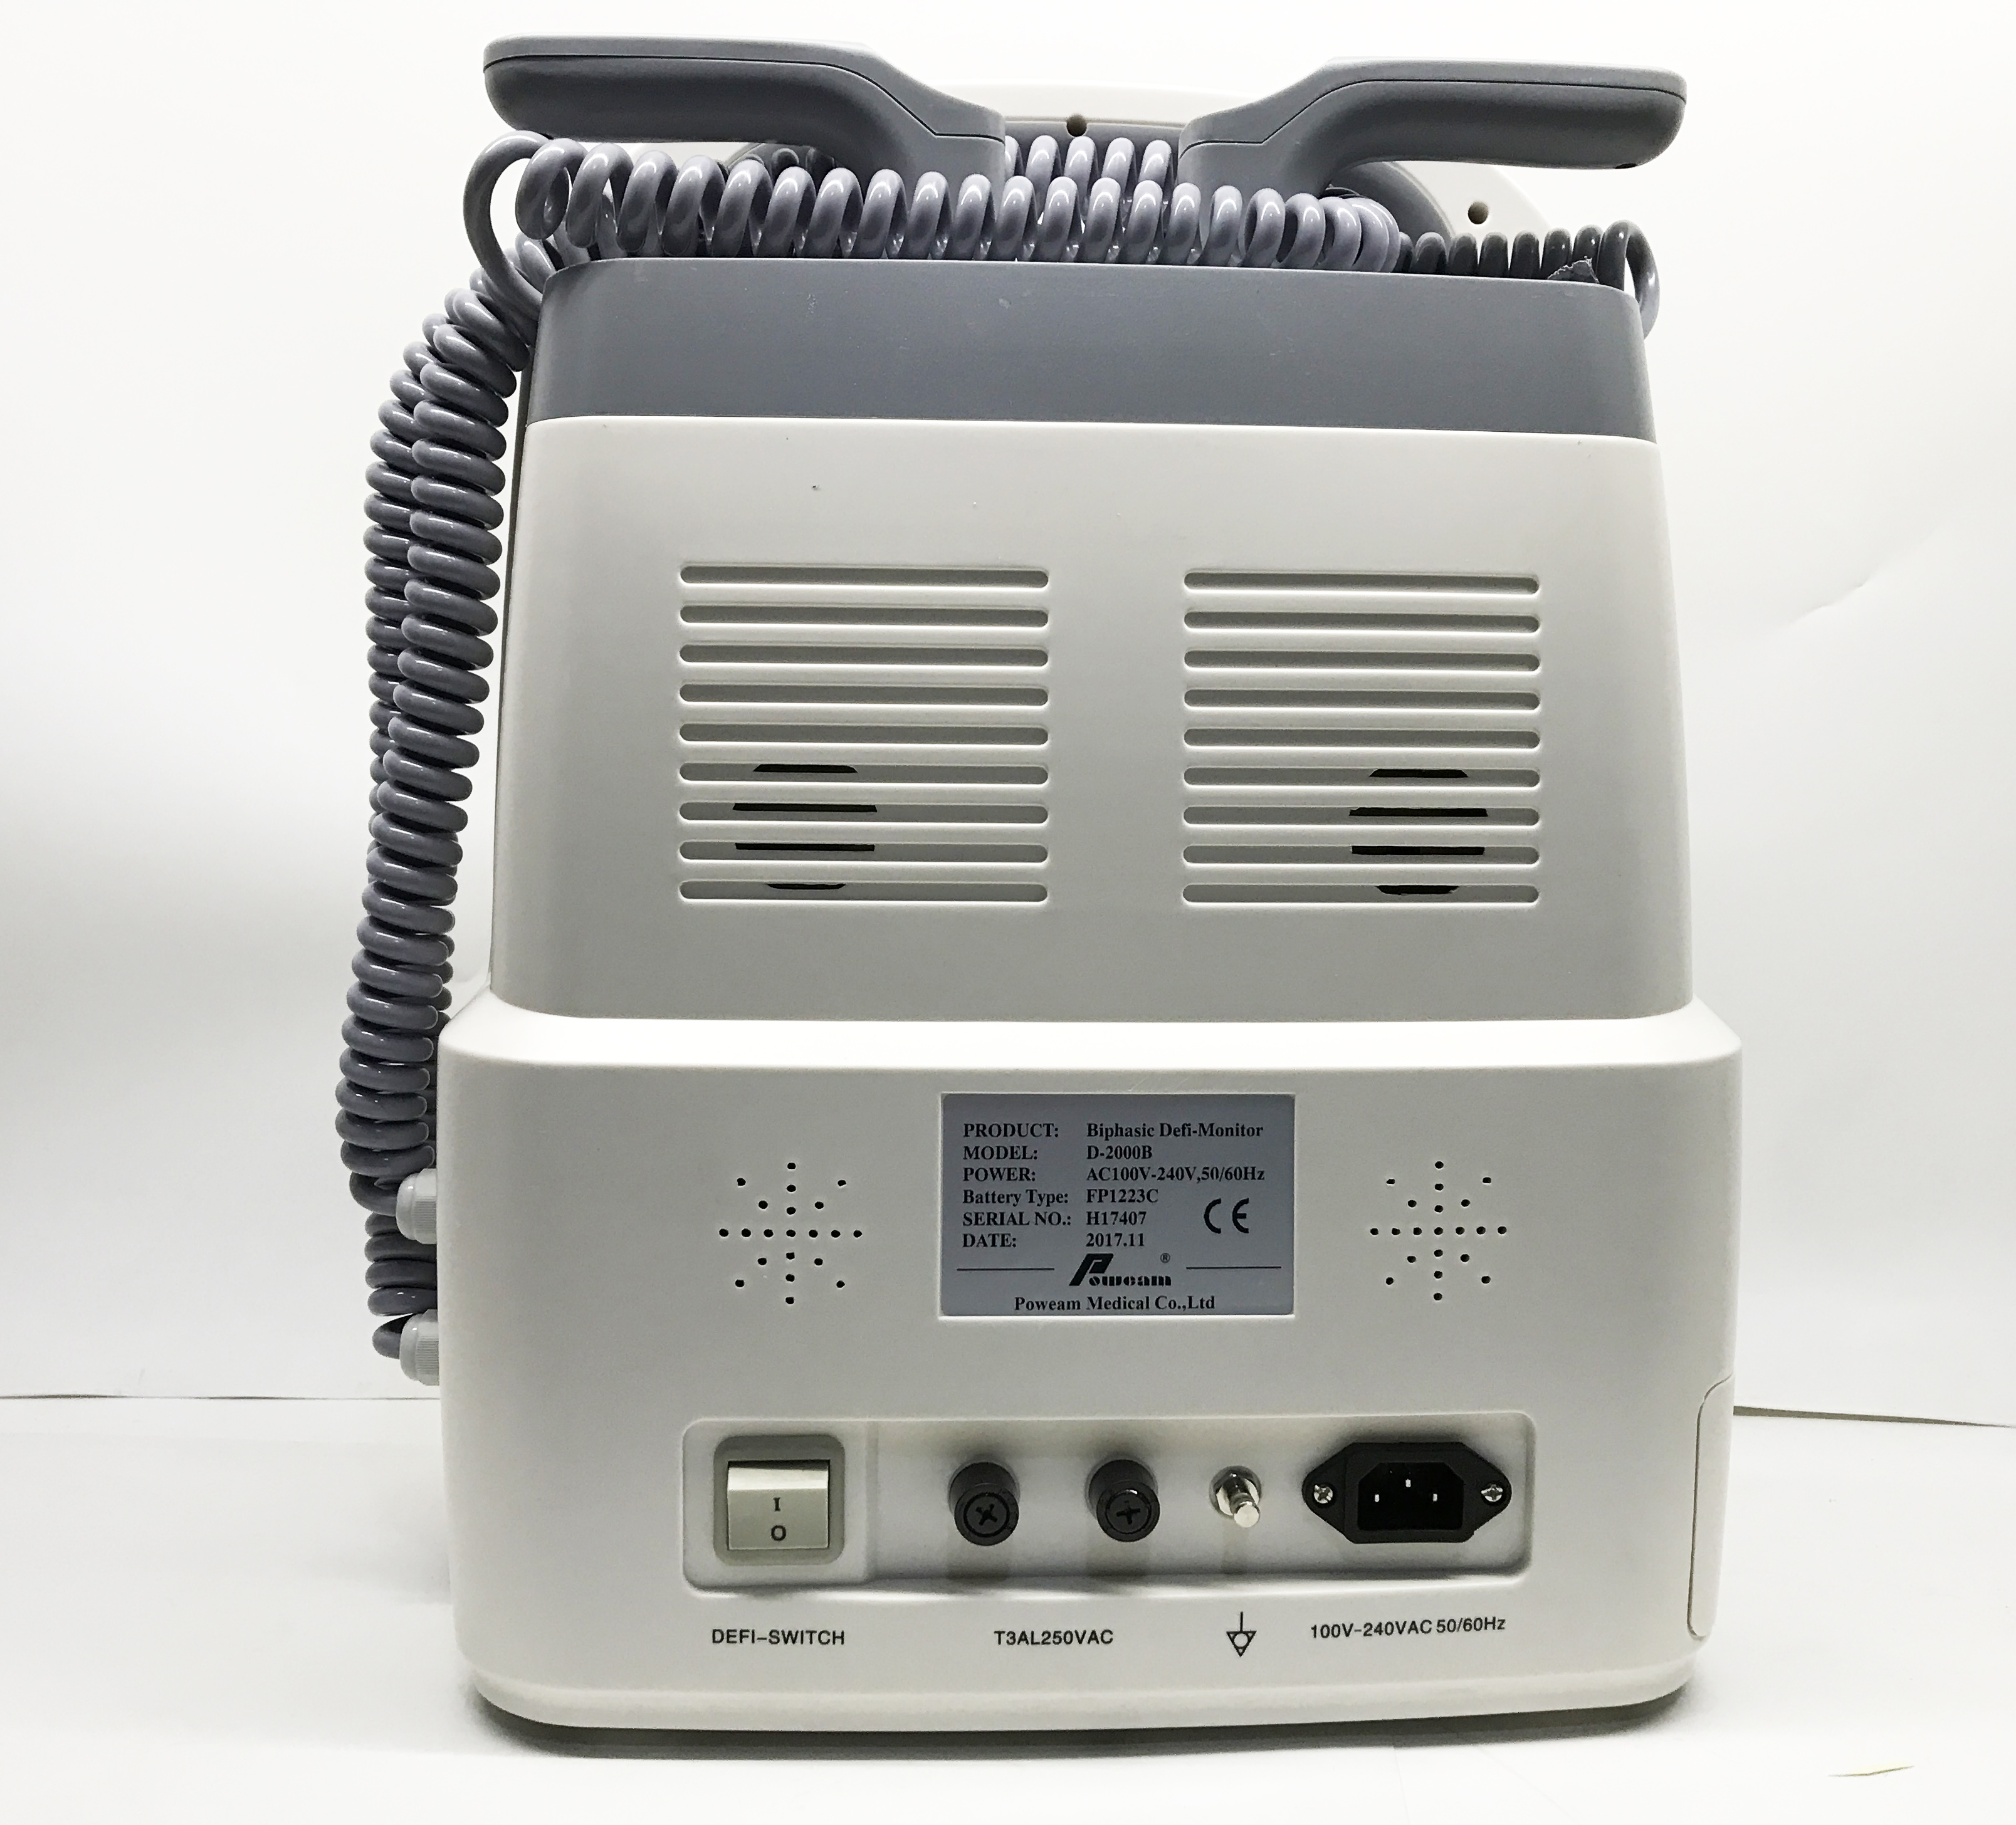 Monitor de desfibrilador cardíaco D-2000B BIPHASIC con ECG, SPO2 bifásico, desfibrilador externo automático